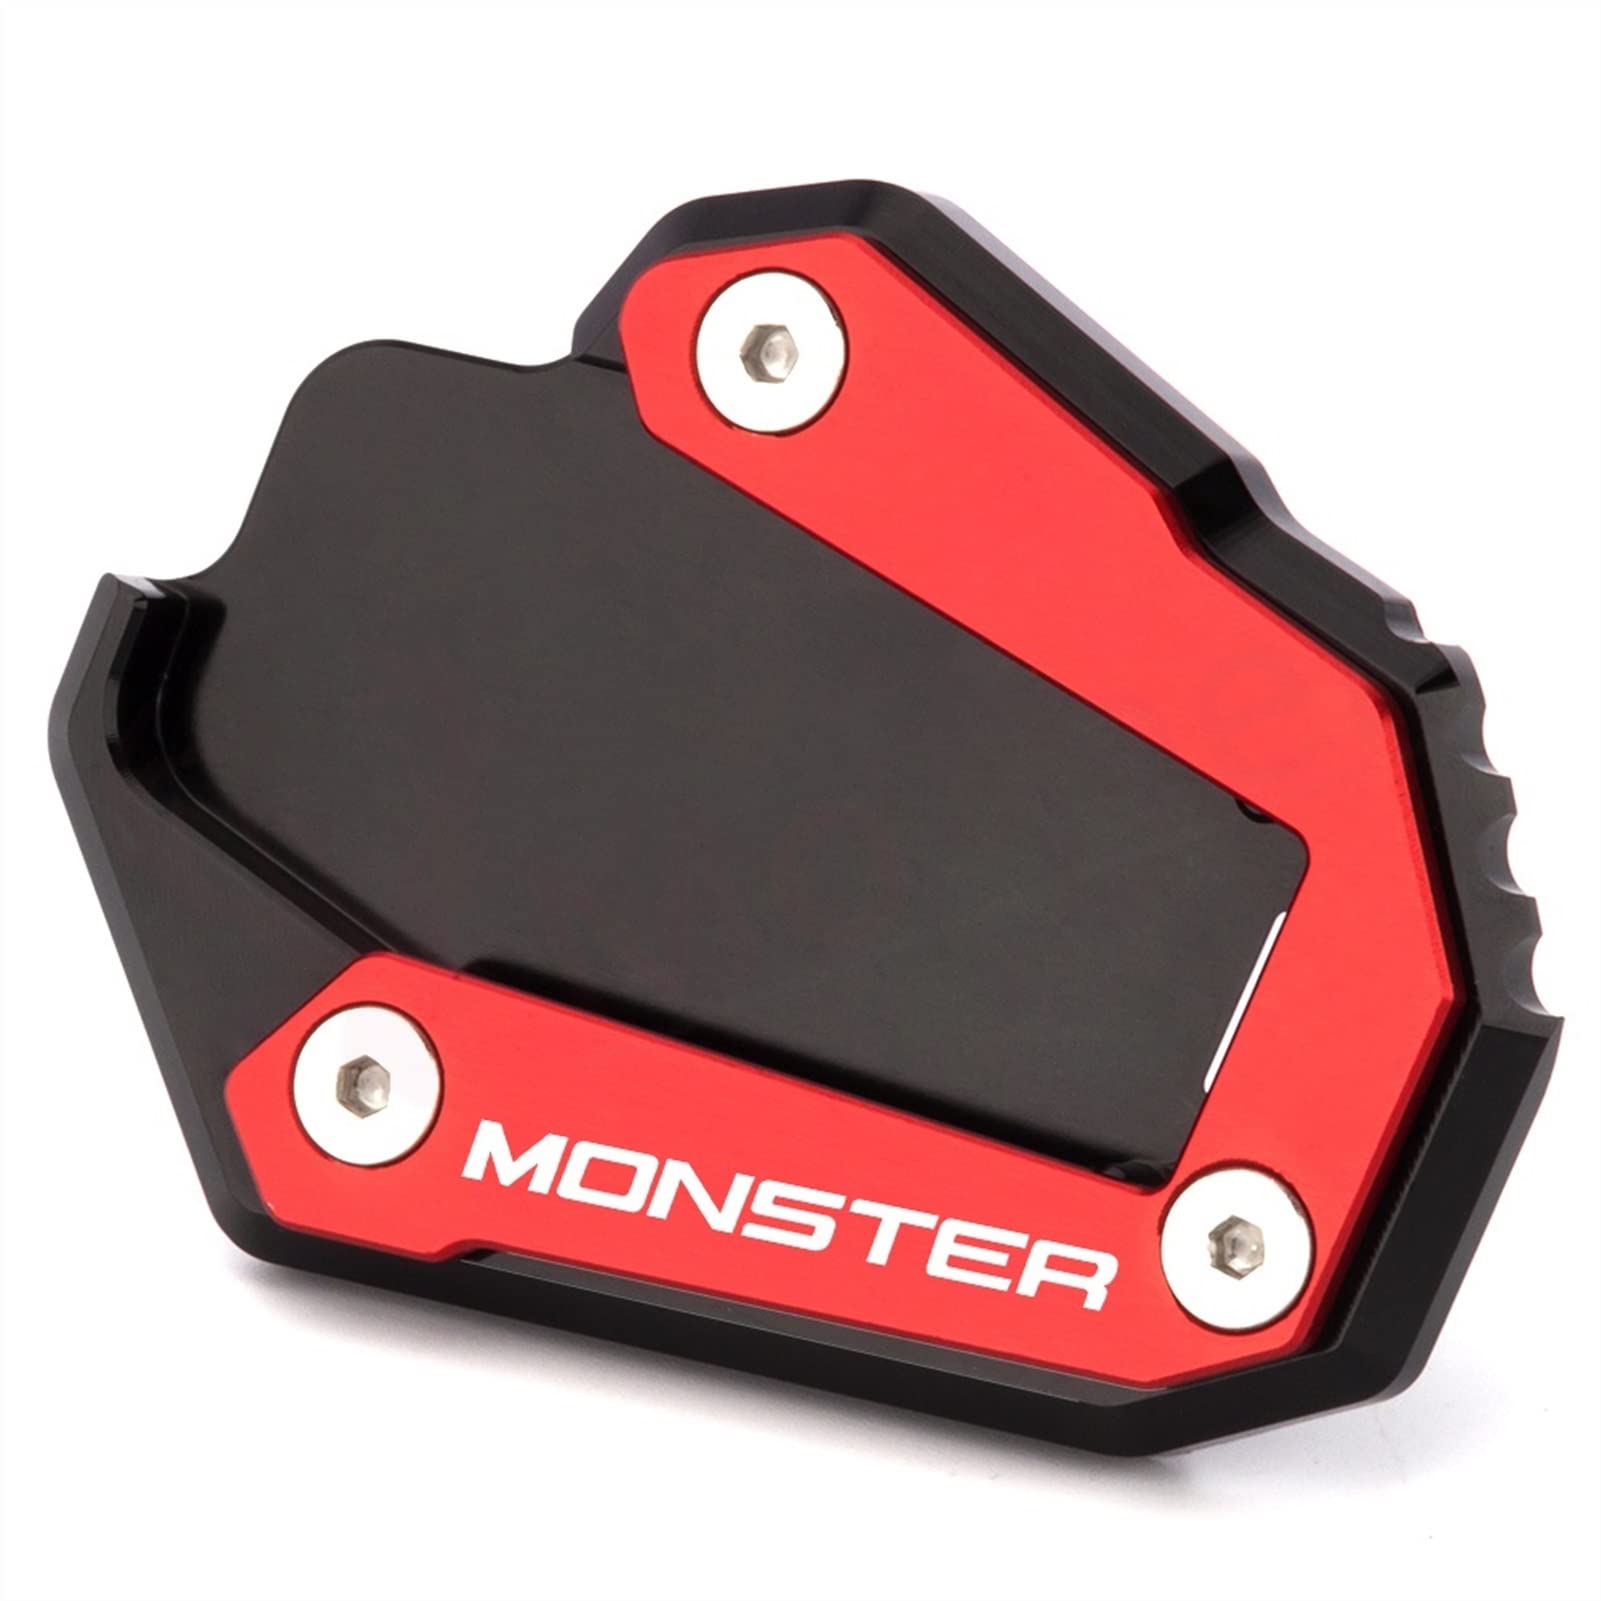 Für Ducati Monster 1200 1200S 1200R 821 Monster Neuer Kickstand Seitenständer Plattenpolster Vergrößern Verlängerung Fußplatte Seitenständer (Color : Black RED A) von SQLCF